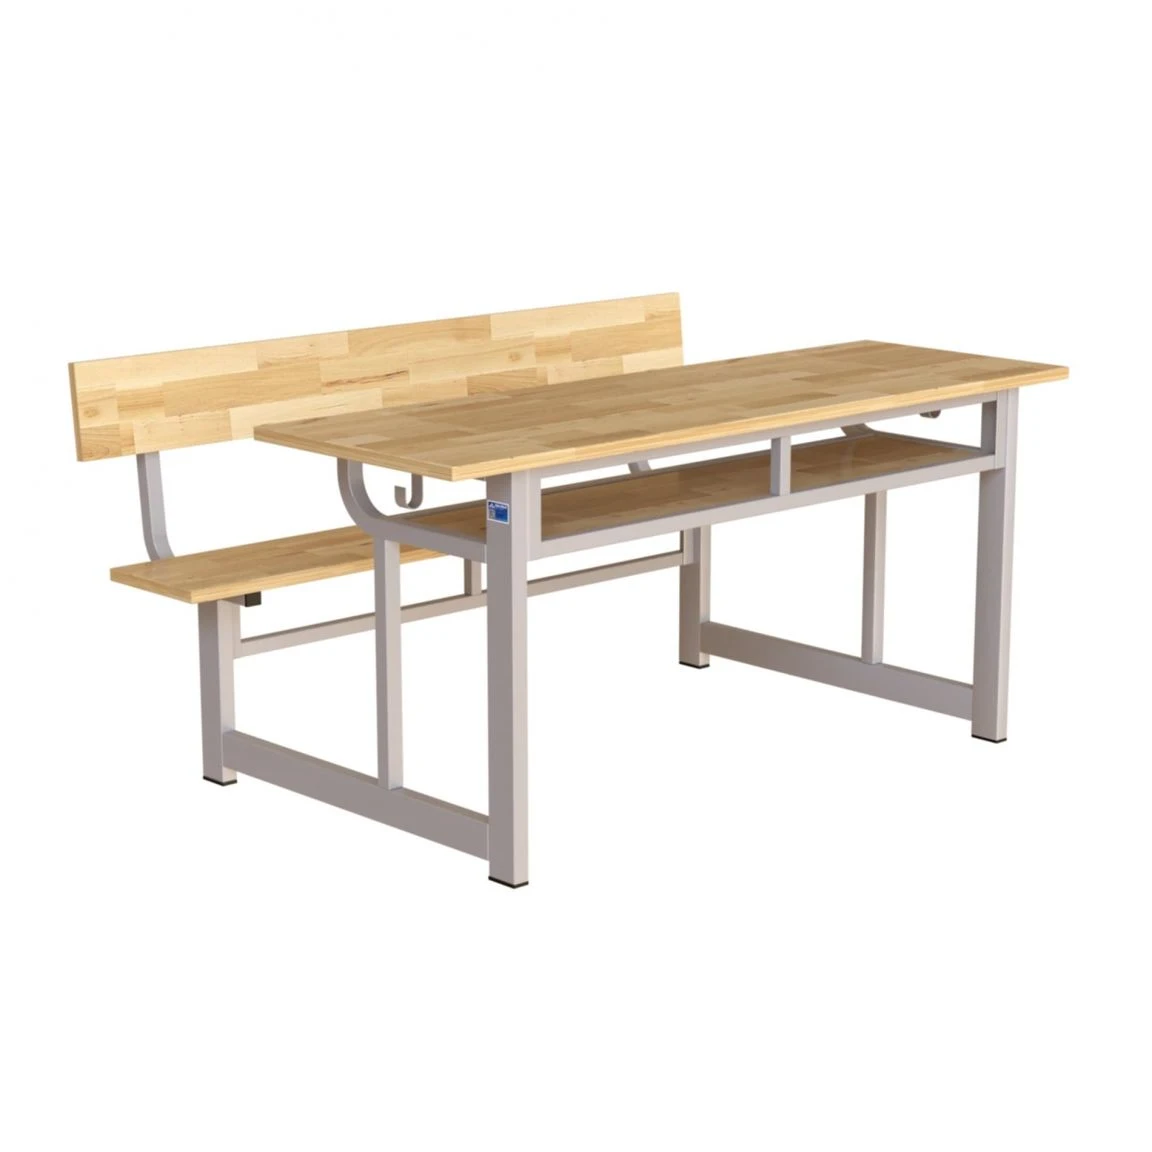 Ghế ngồi học sinh cấp 3 băng dài được làm từ chất liệu gỗ công nghiệp an toàn